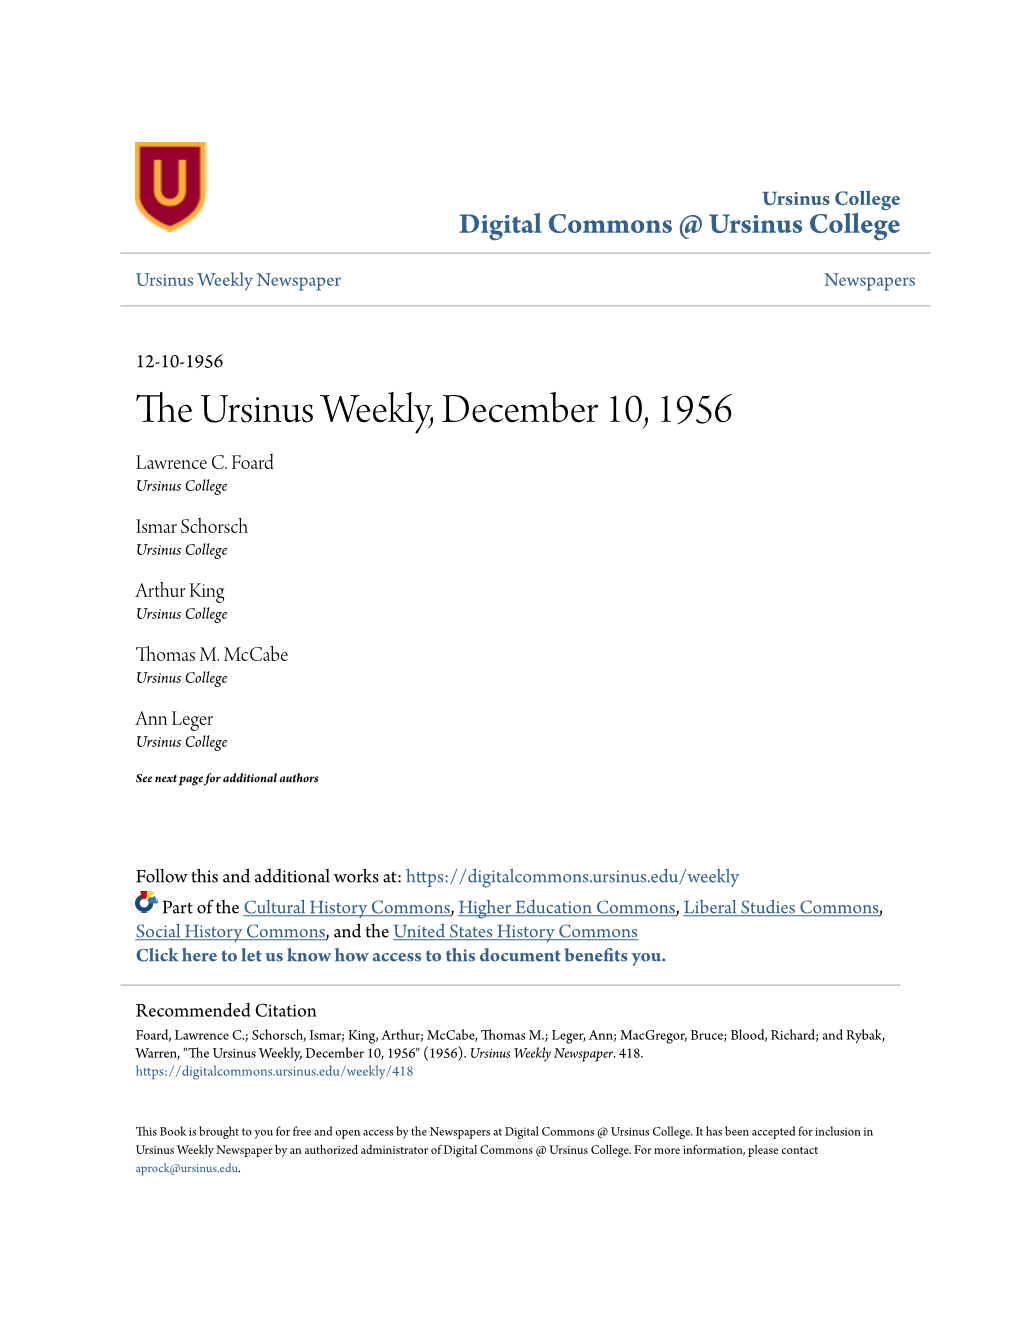 The Ursinus Weekly, December 10, 1956